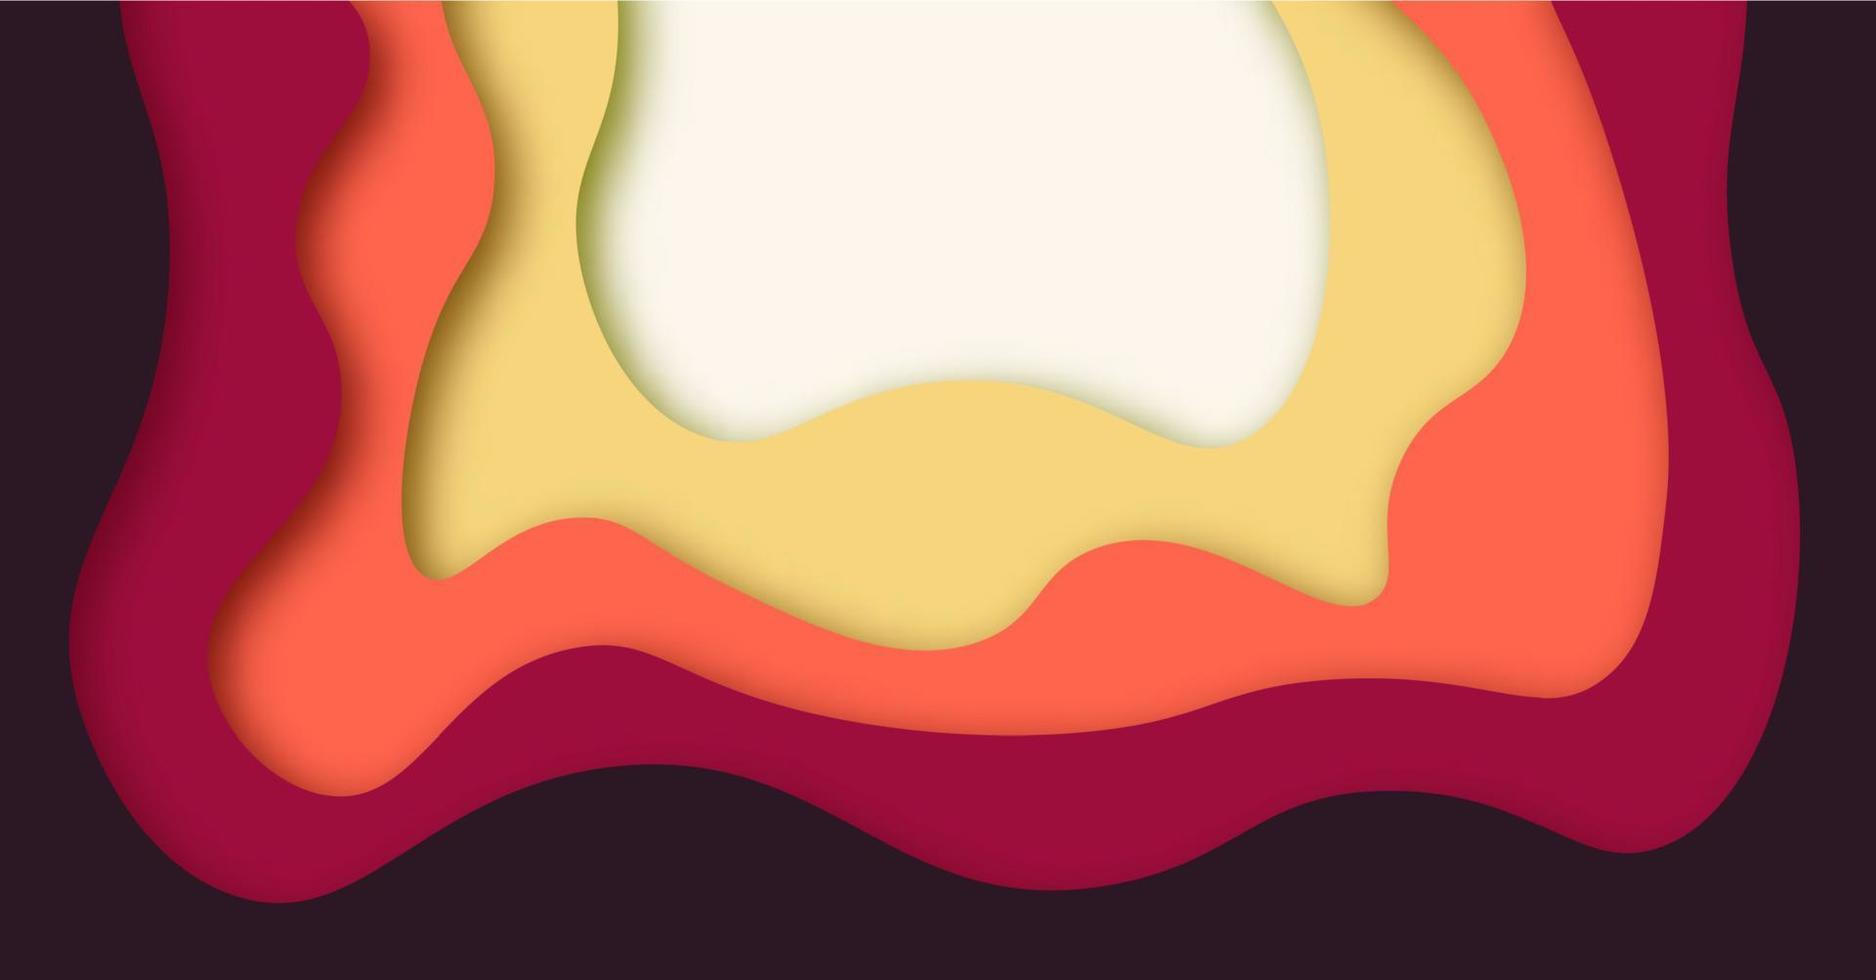 abstract achtergrond met oranje papier besnoeiing vormen banier ontwerp. vector illustratie